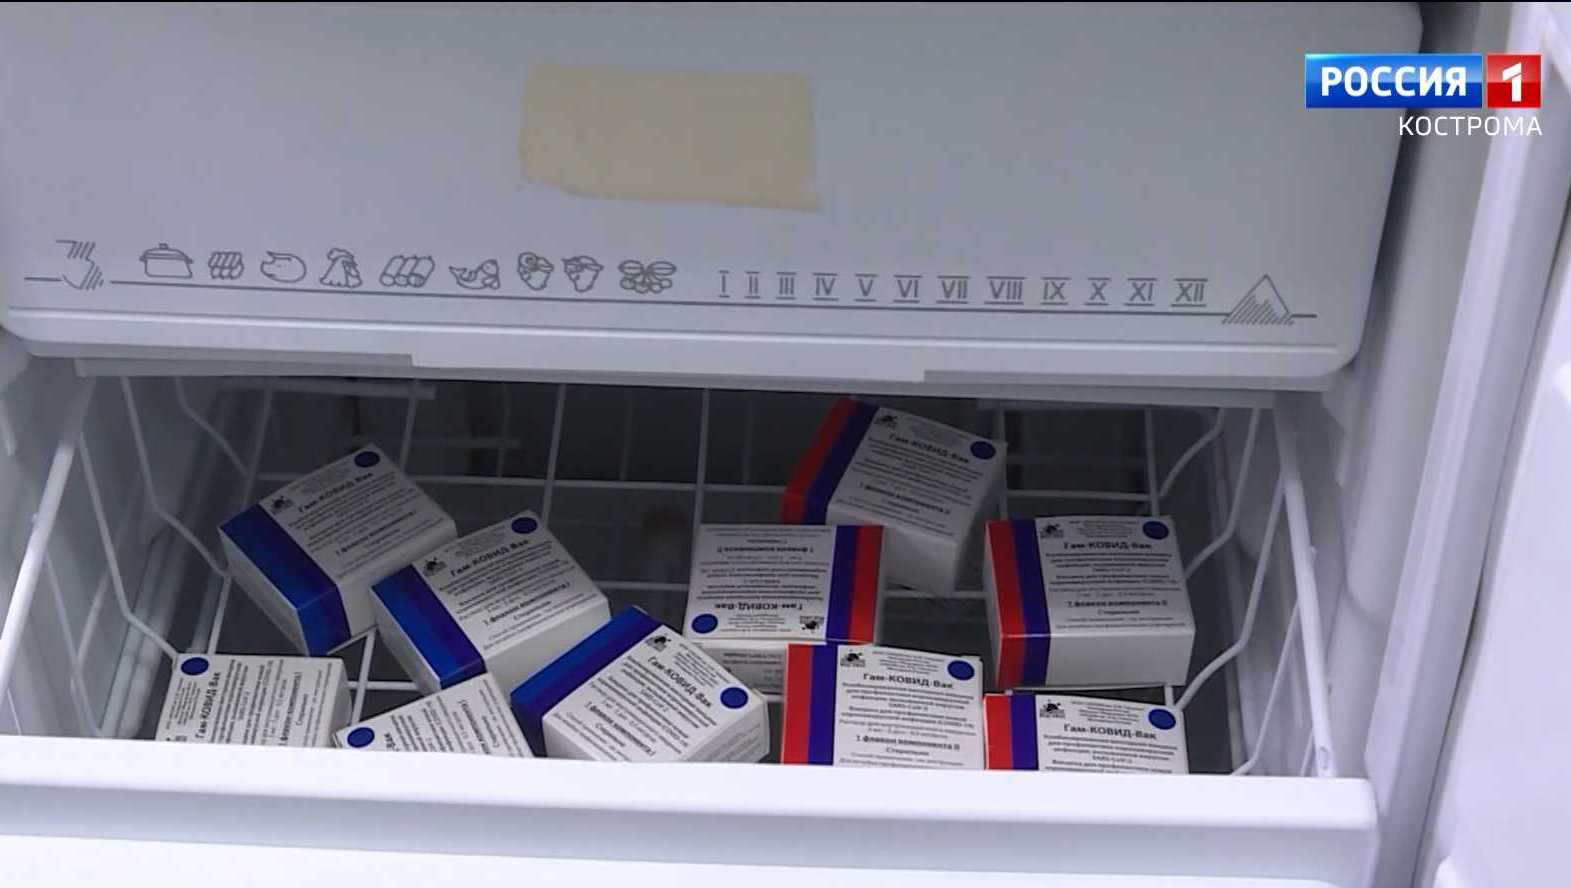 хранение вакцин в холодильнике по полкам